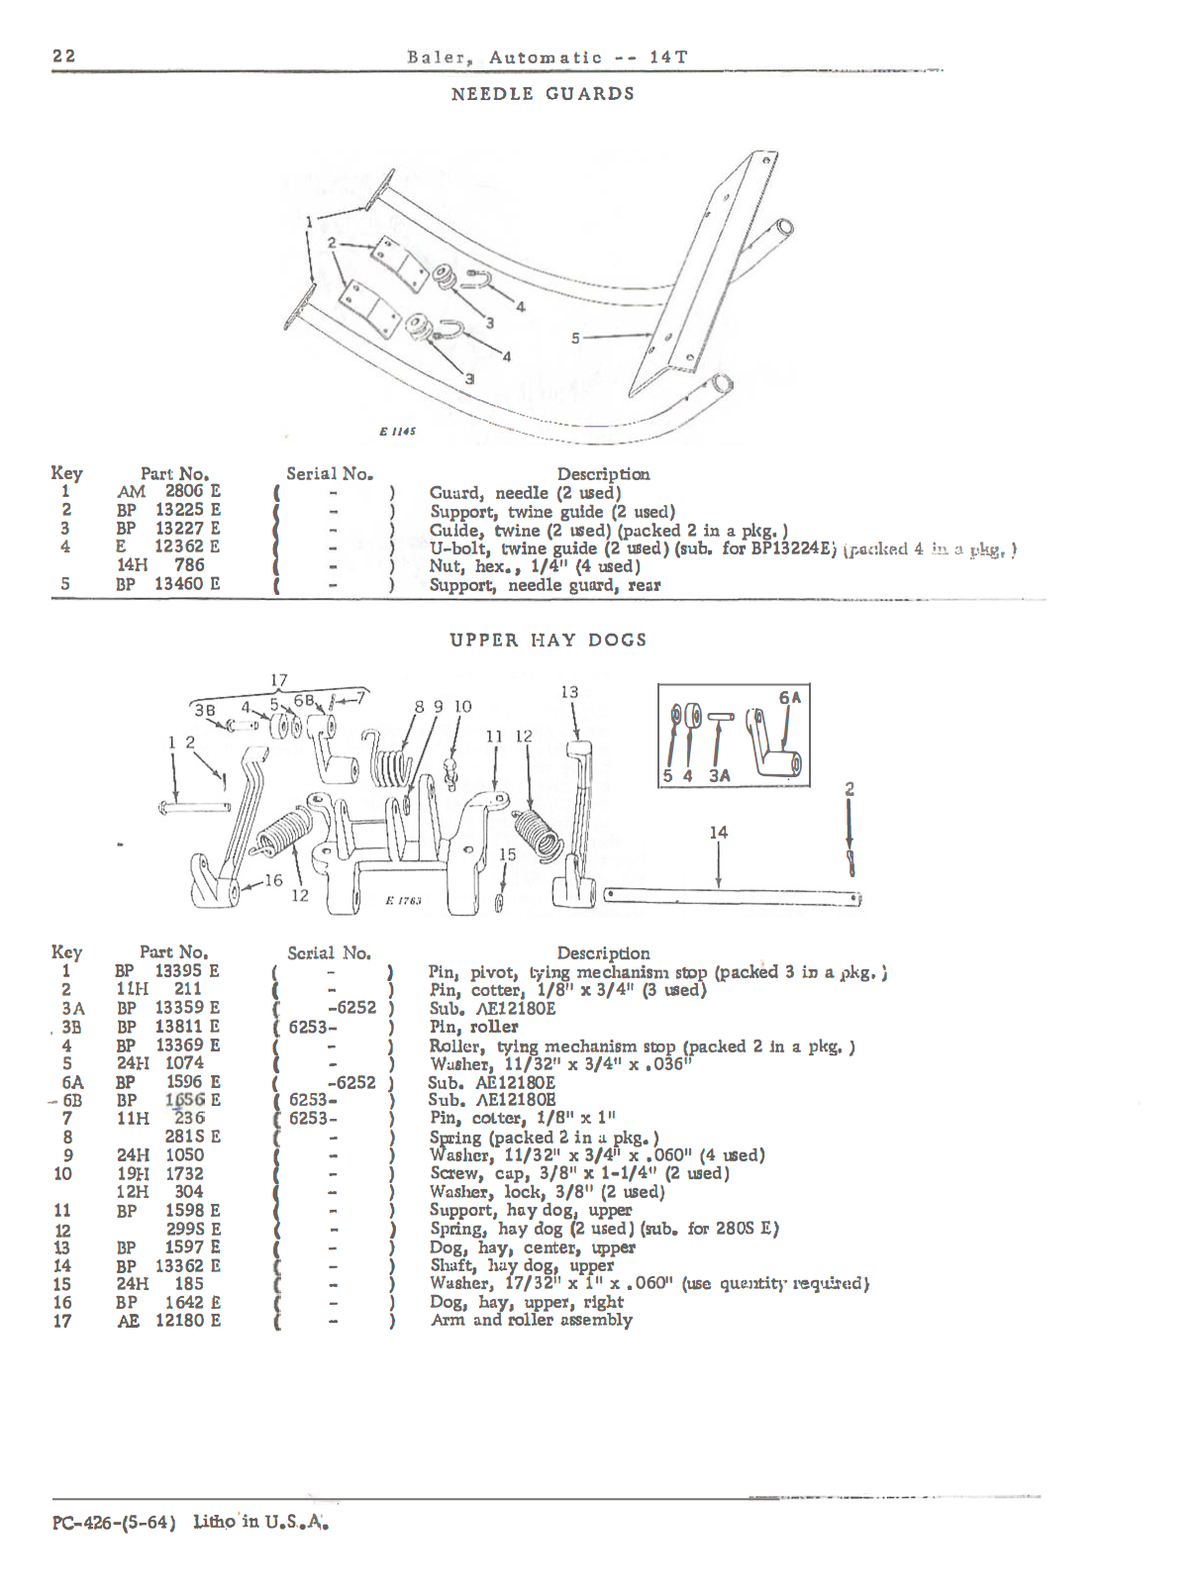 John Deere No. 14T Automatic Pickup Baler - Parts Catalog - Ag Manuals - A Provider of Digital Farm Manuals - 2